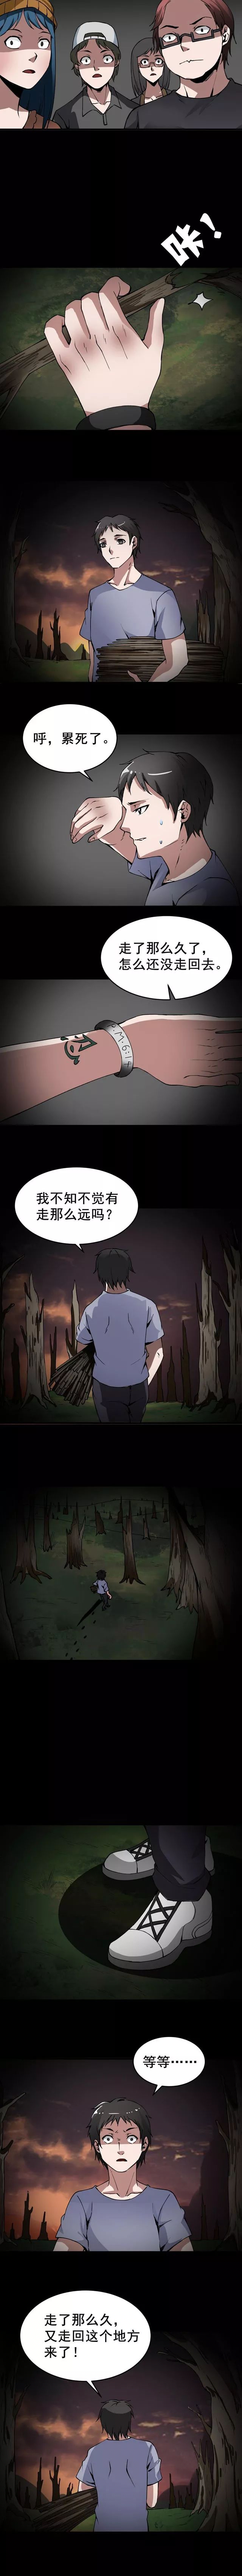 怪談漫畫《迷路森林》走不出來的森林 靈異 第6張